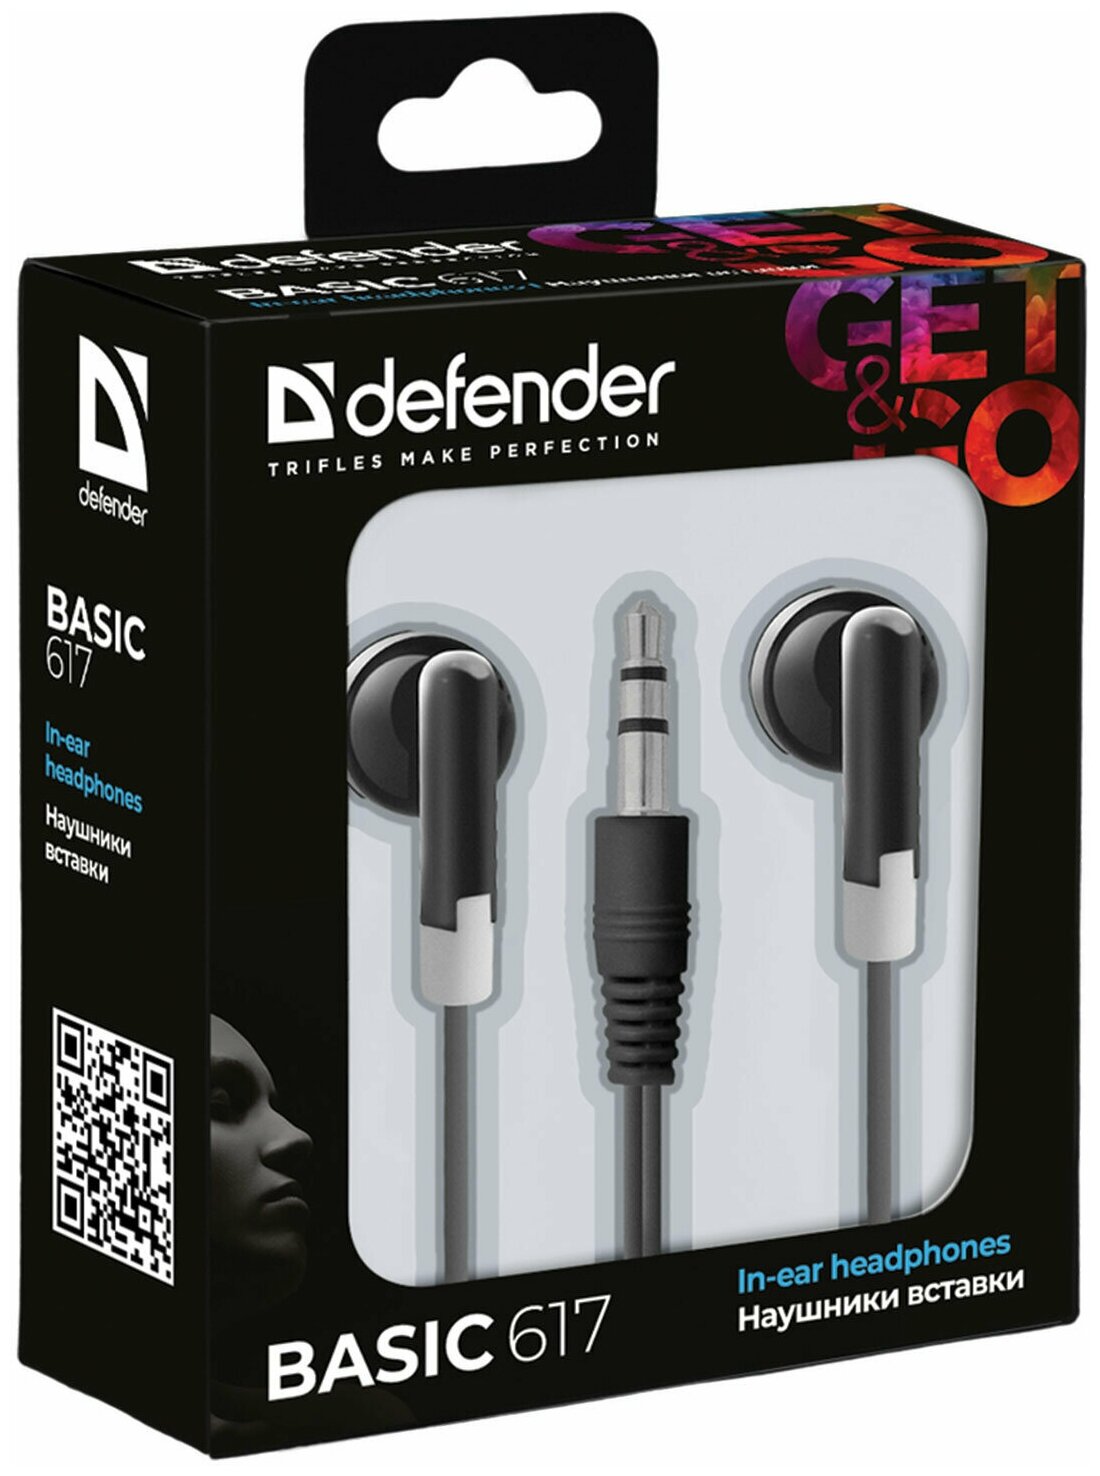 Наушники DEFENDER #1 Basic 617, комплект 5 шт, проводные, 1,1 м, вкладыши, черные, 63617 - фото №3